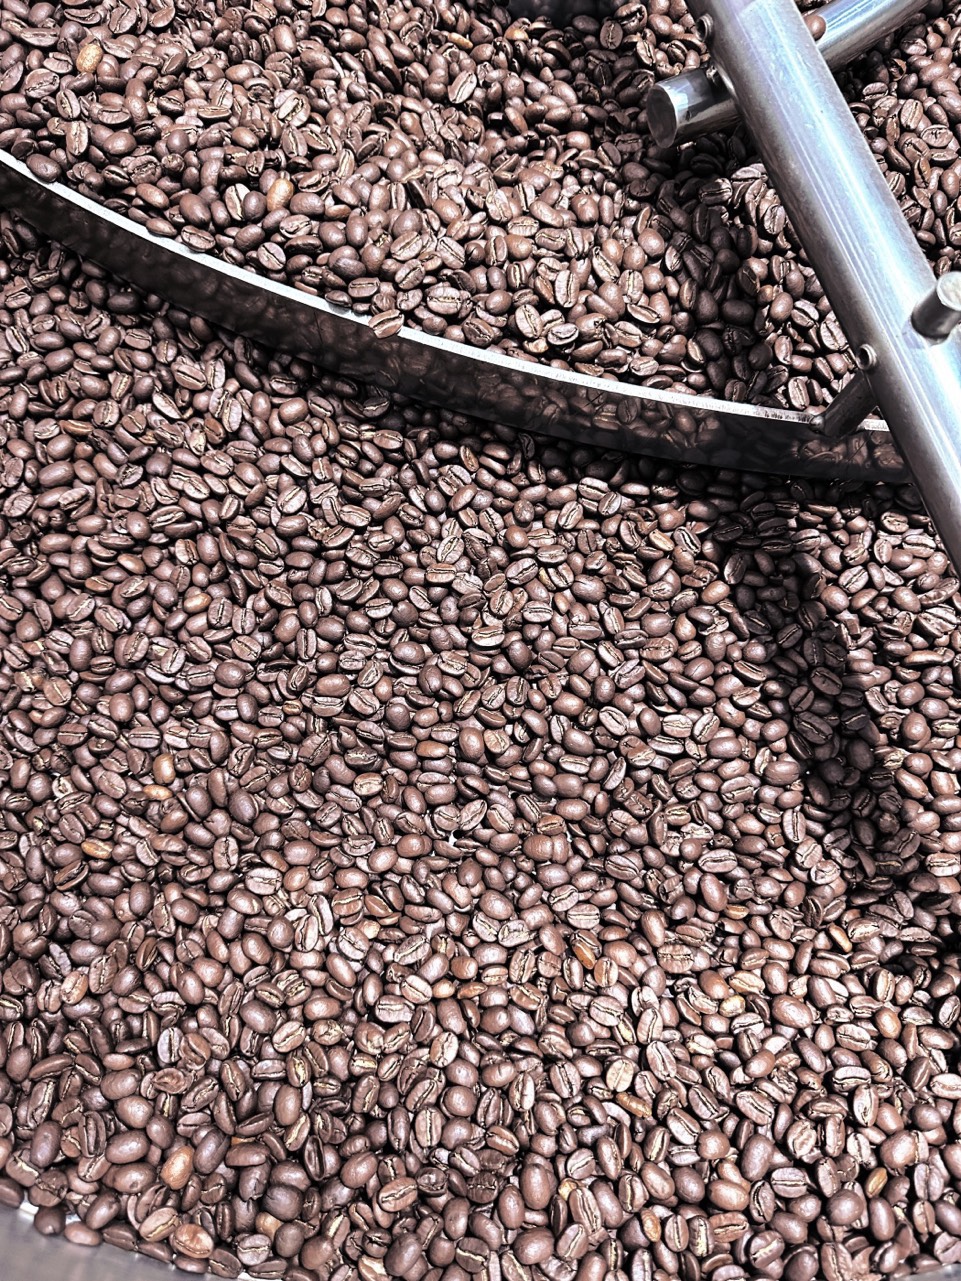 Crie sua própria marca de café, serviço de processamento de café sob demanda (OEM)